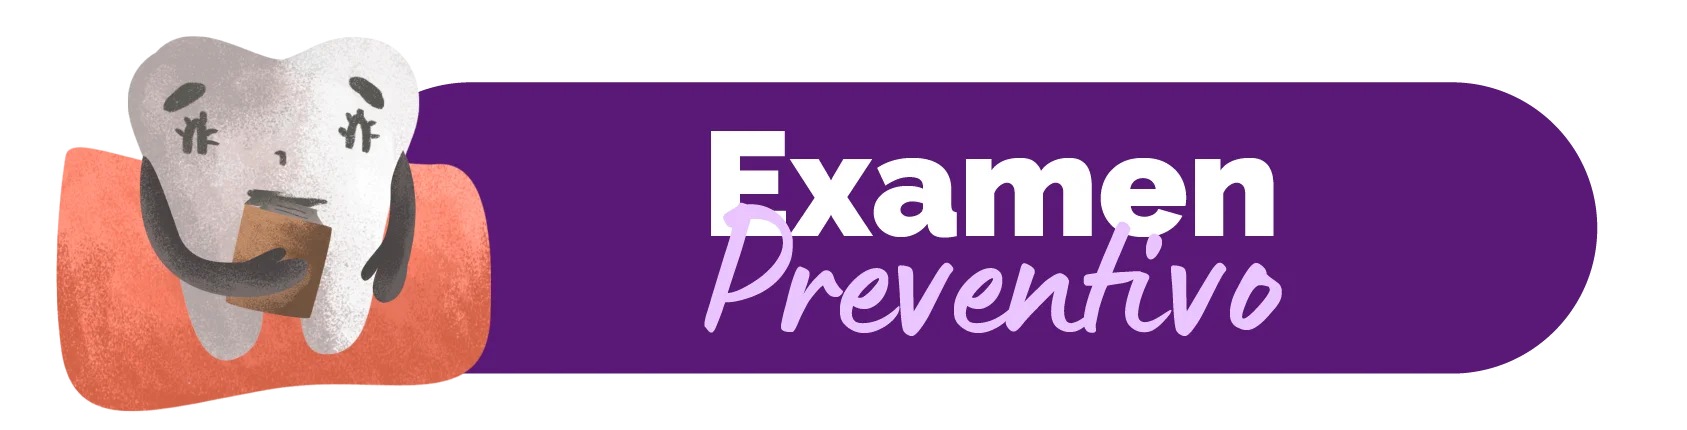 Preventive Exam